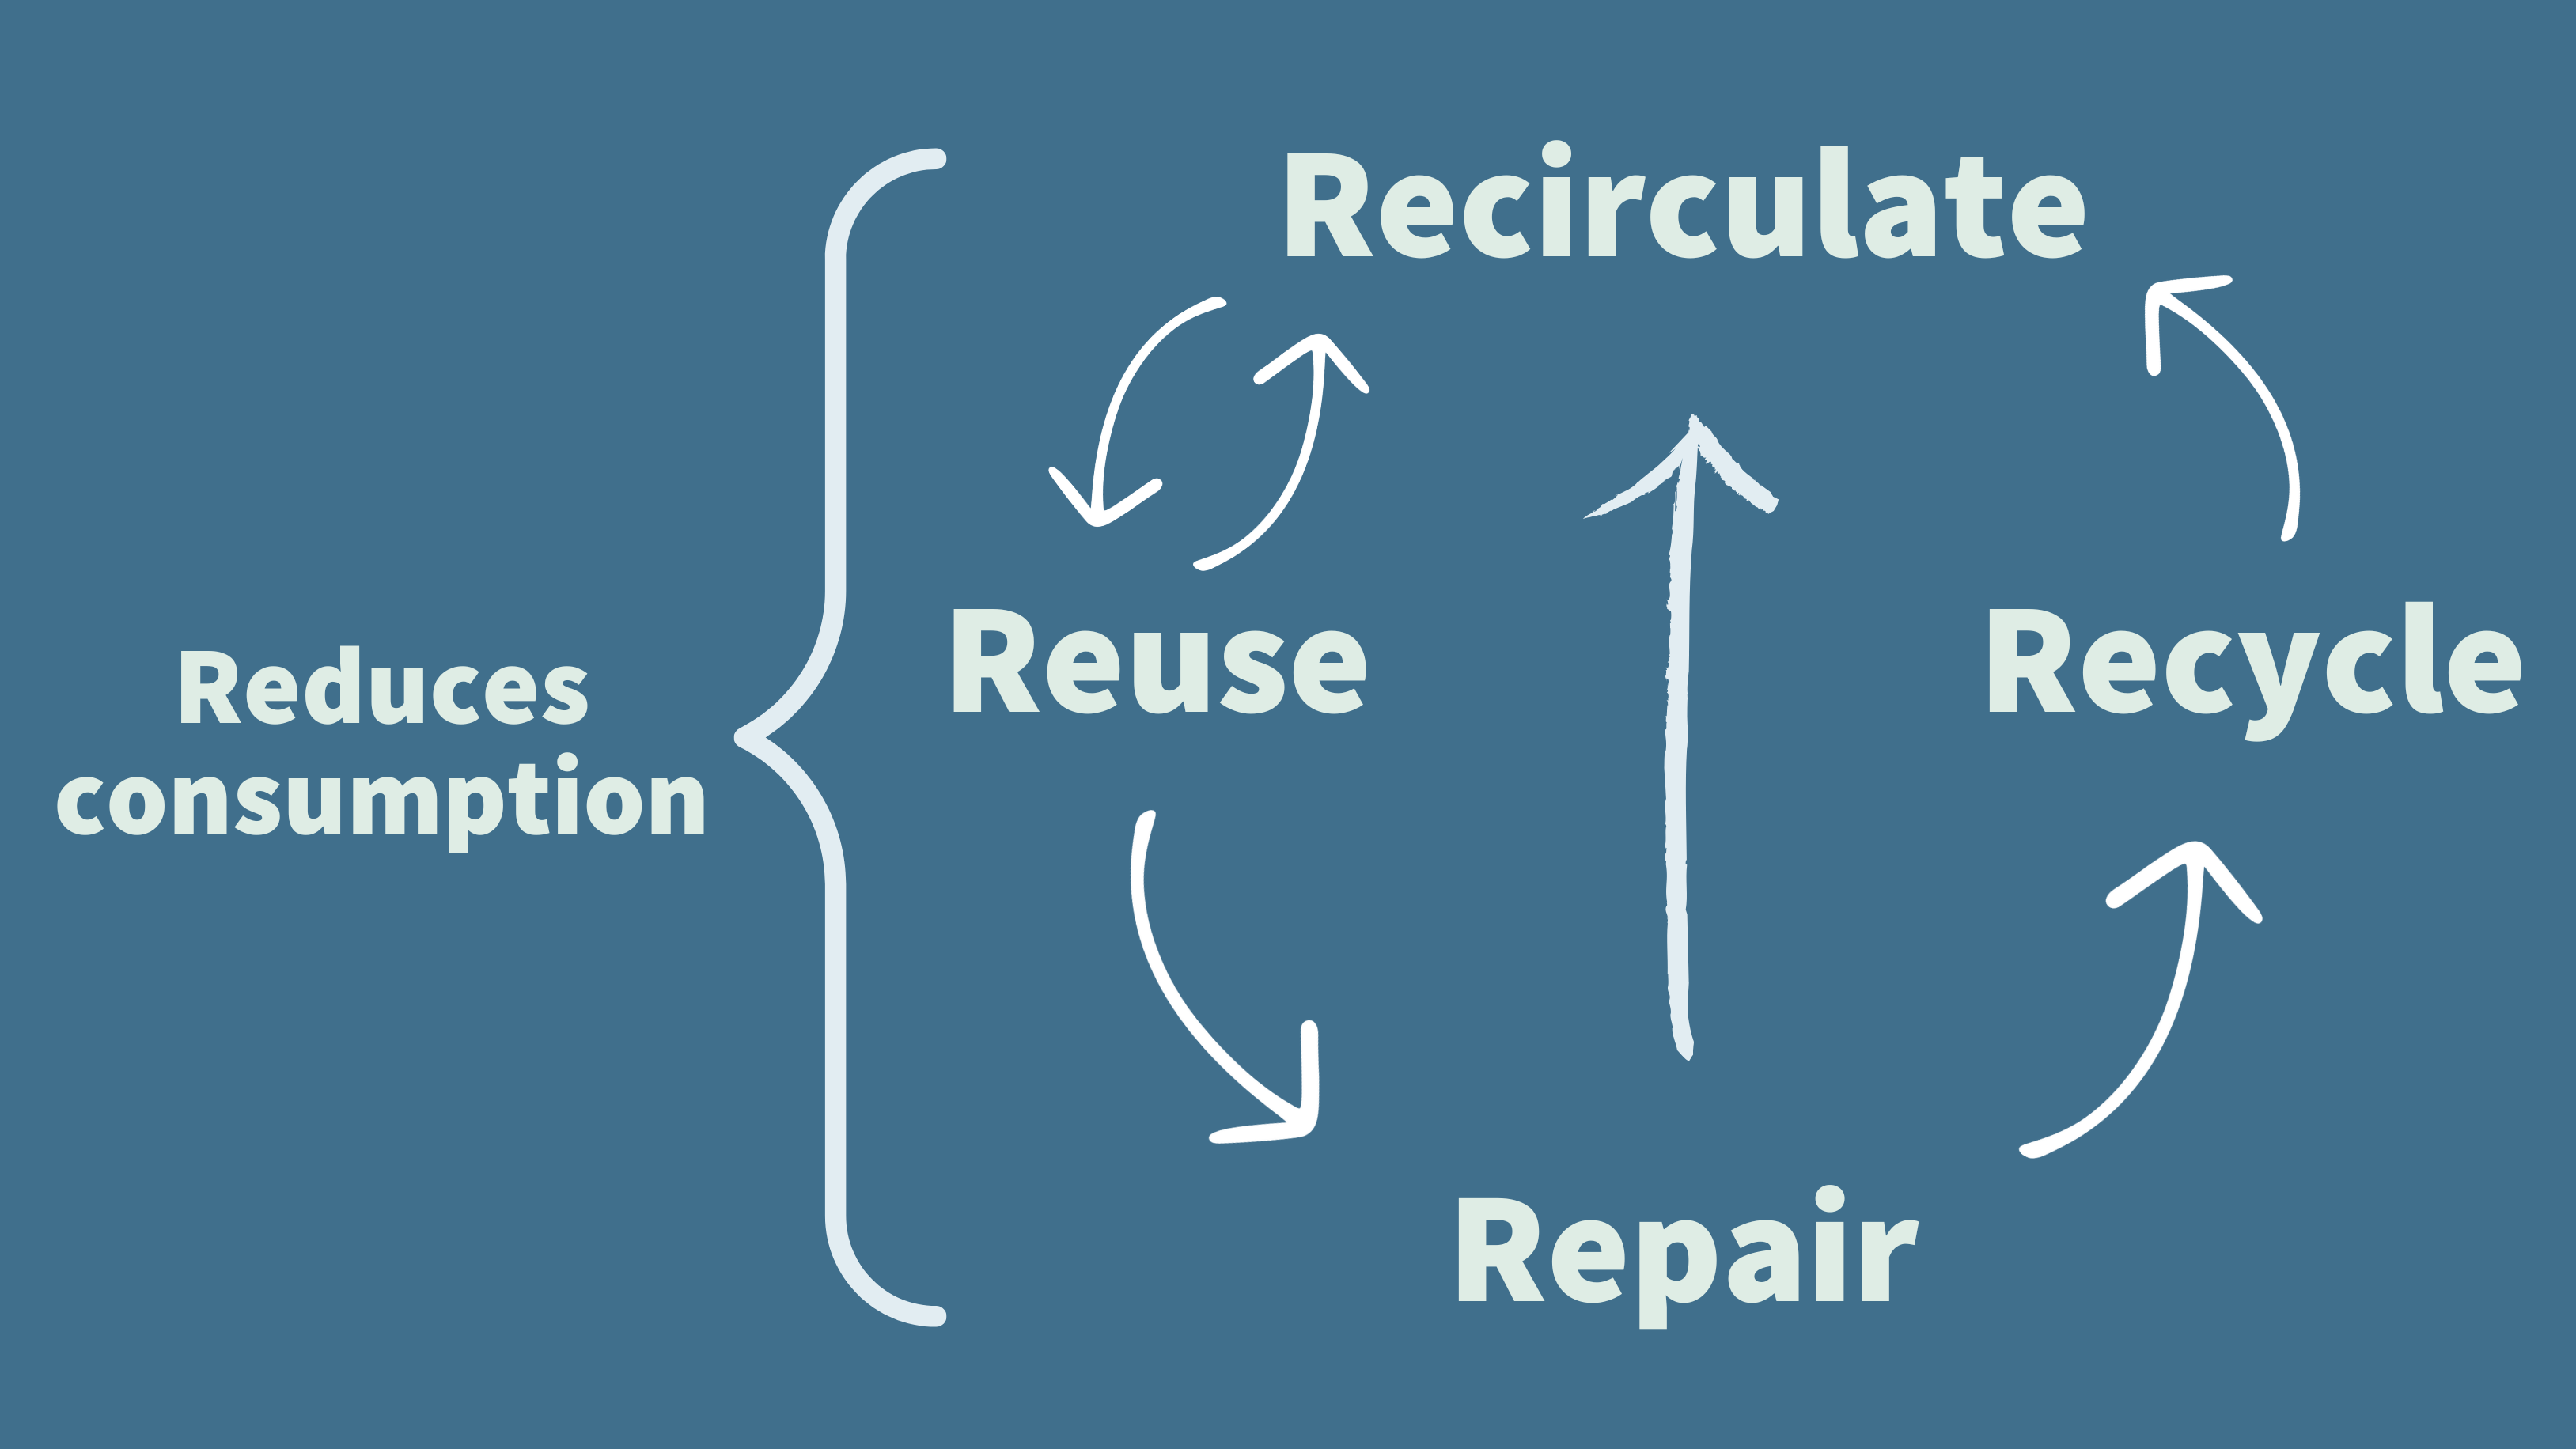 Reduce, reuse, repair, recycle, recirculate cycle